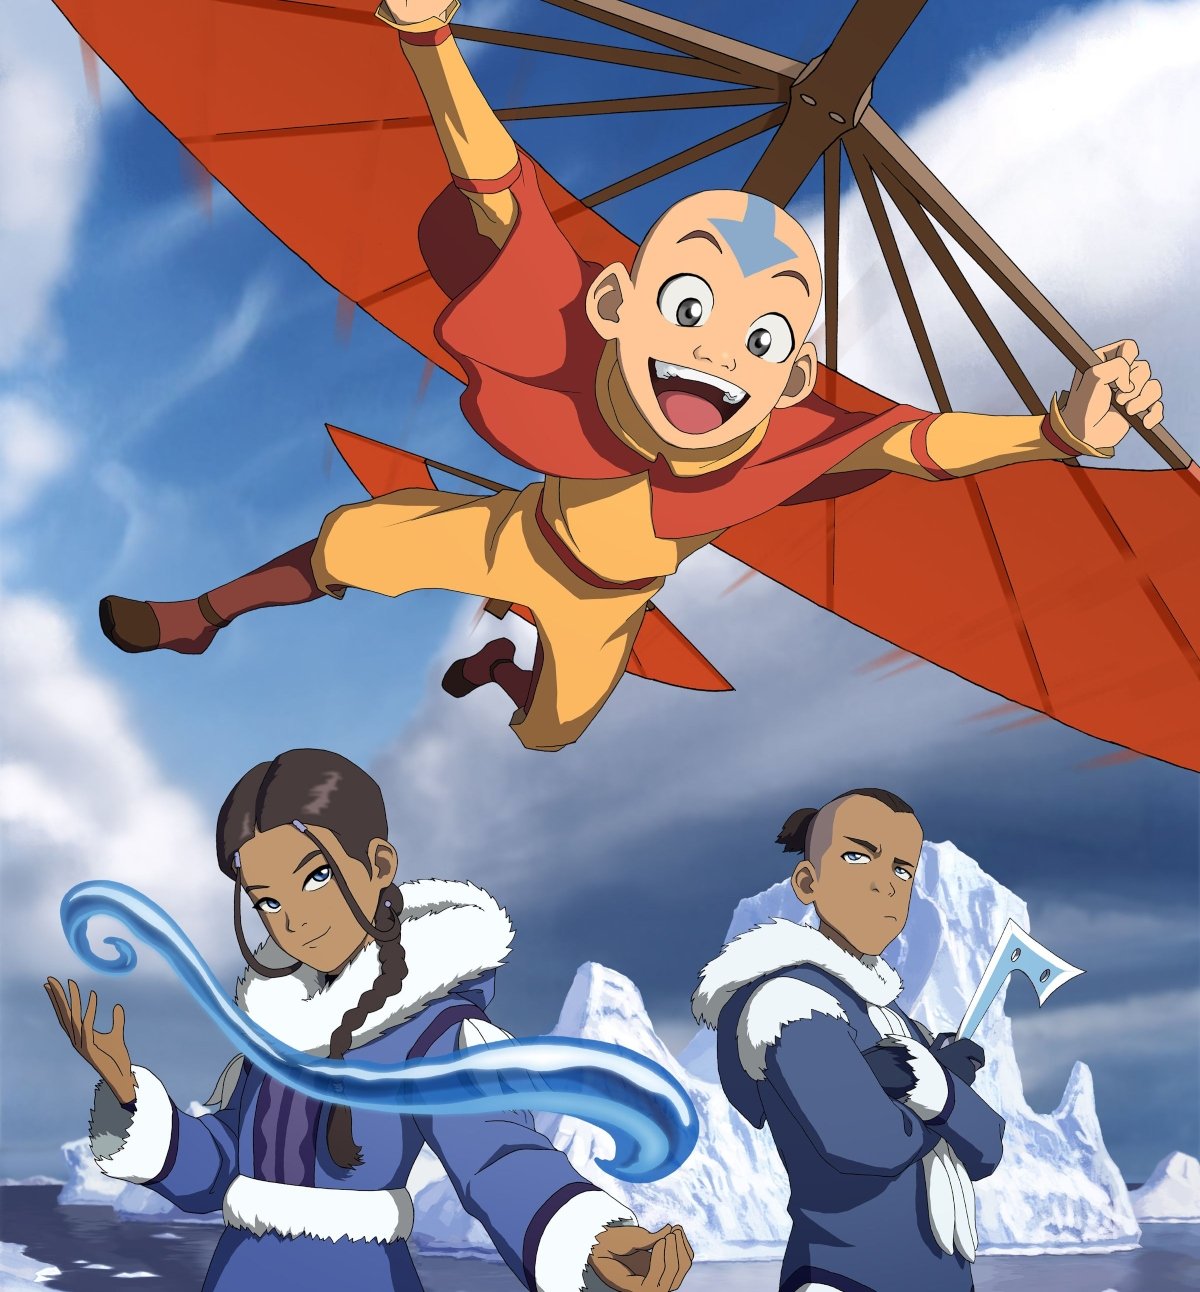 'Avatar: The Last Airbender' with Aang, Katara, and Sokka